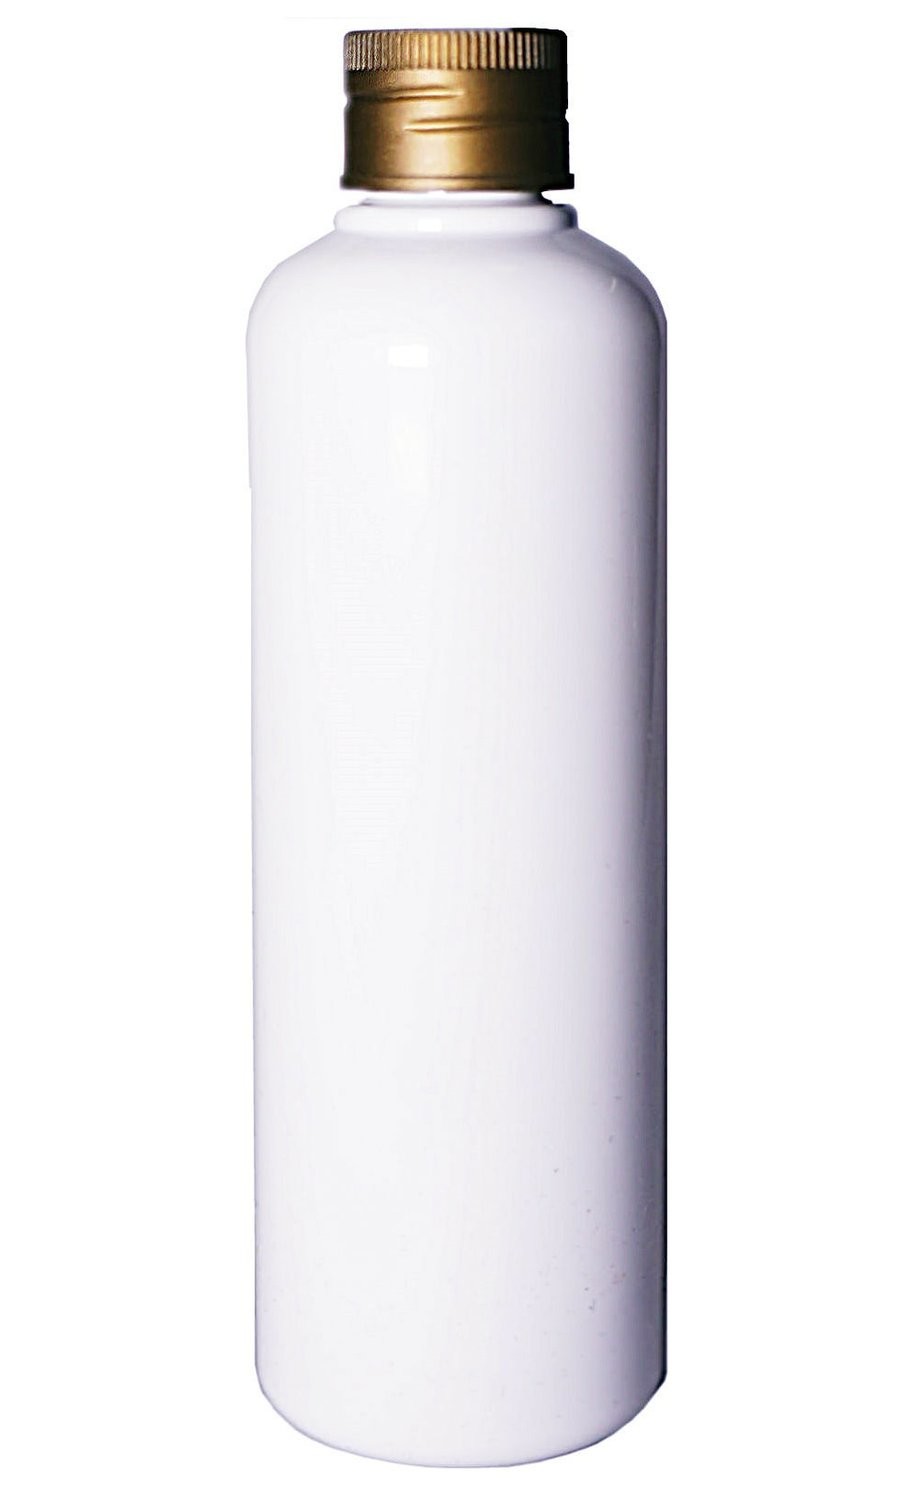 150ml, PET, Boston Bottle with Aluminum Gold Plastic Cap